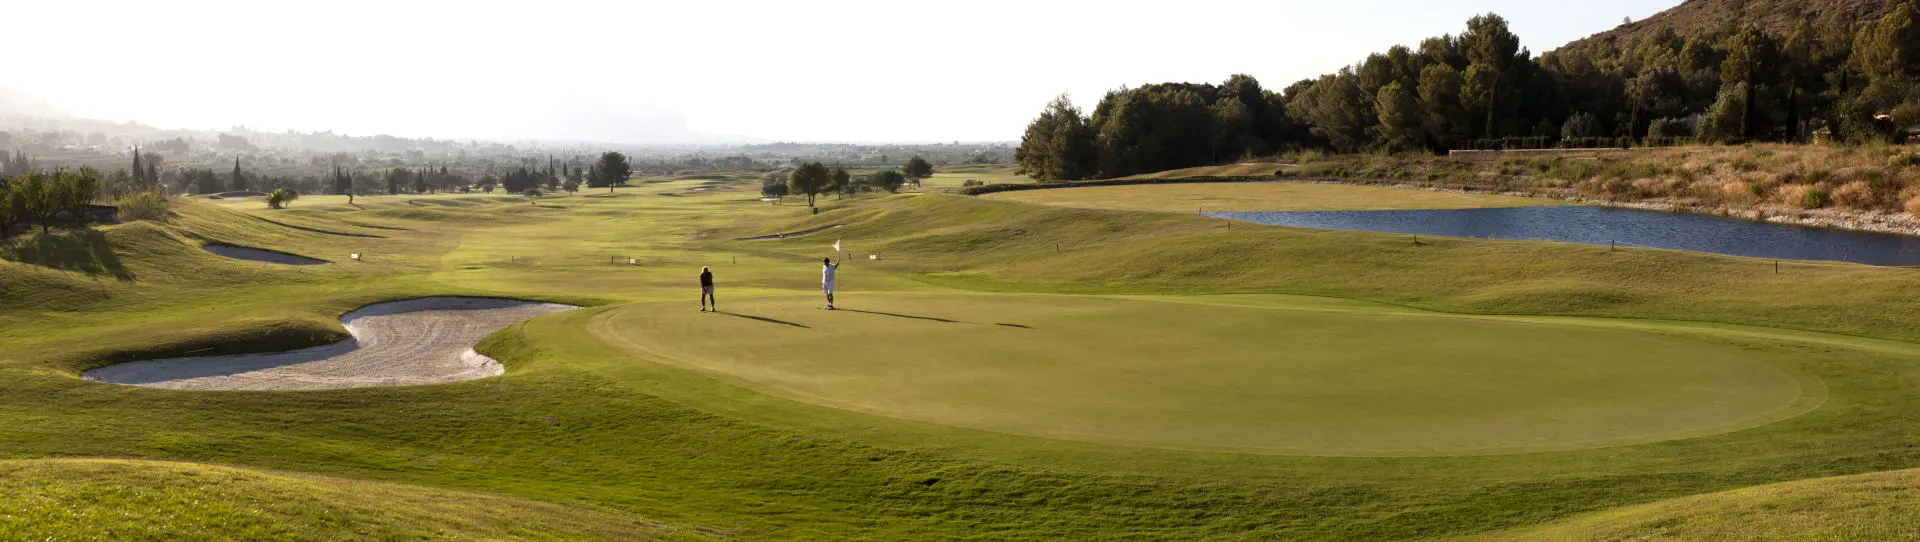 Spain golf courses - La Sella Golf Course - Photo 2